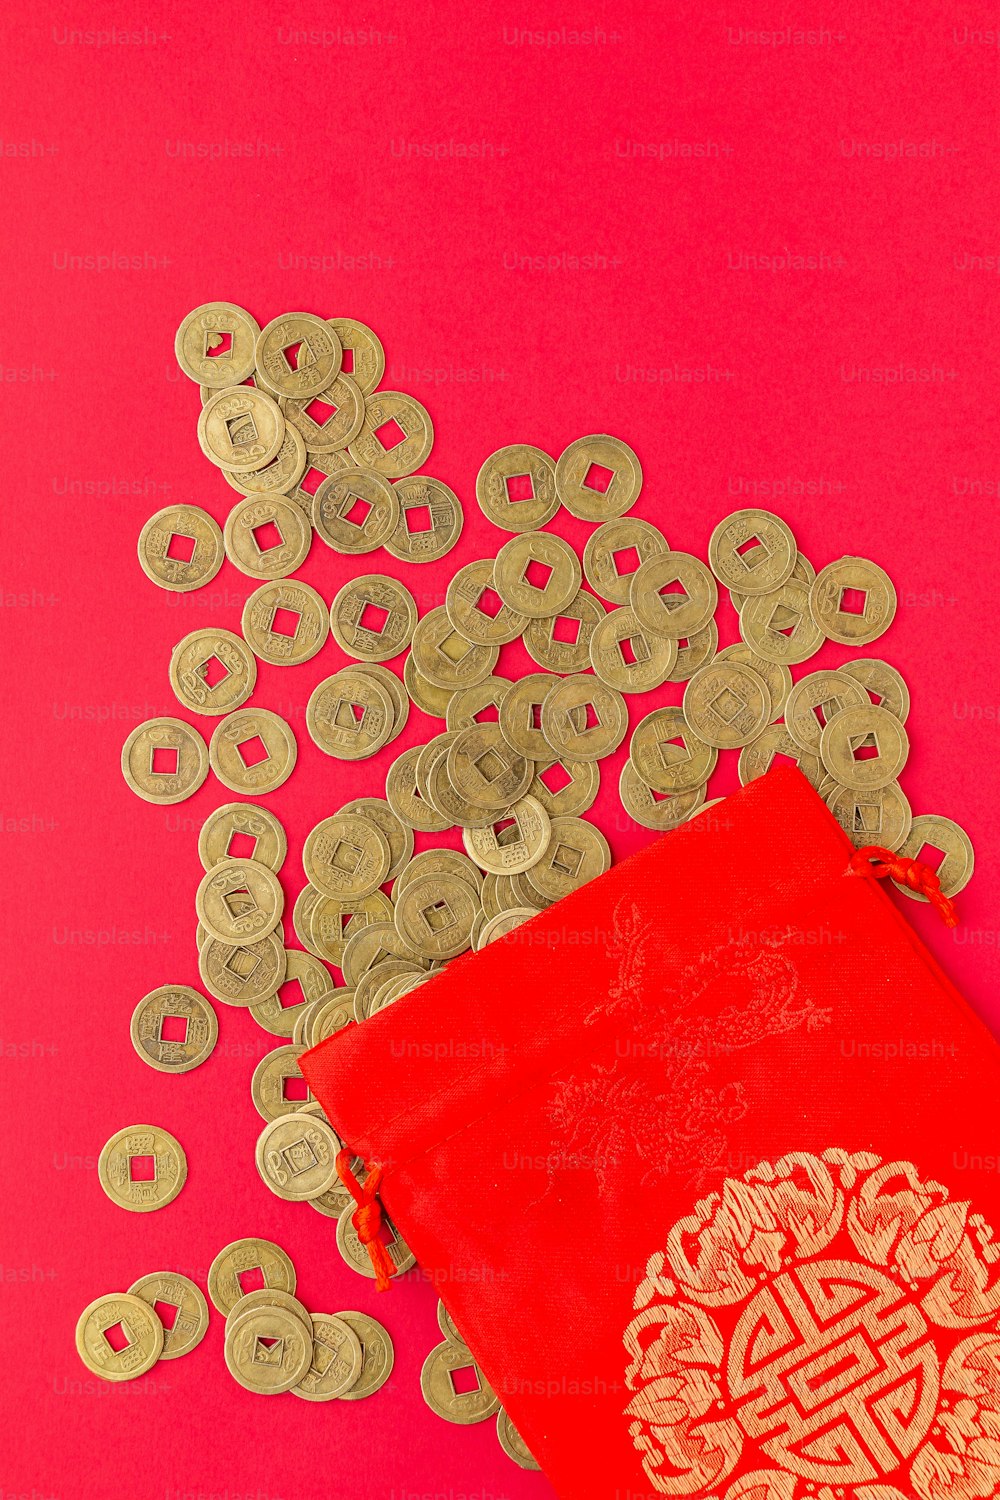 Un libro rojo rodeado de monedas de oro sobre un fondo rosa